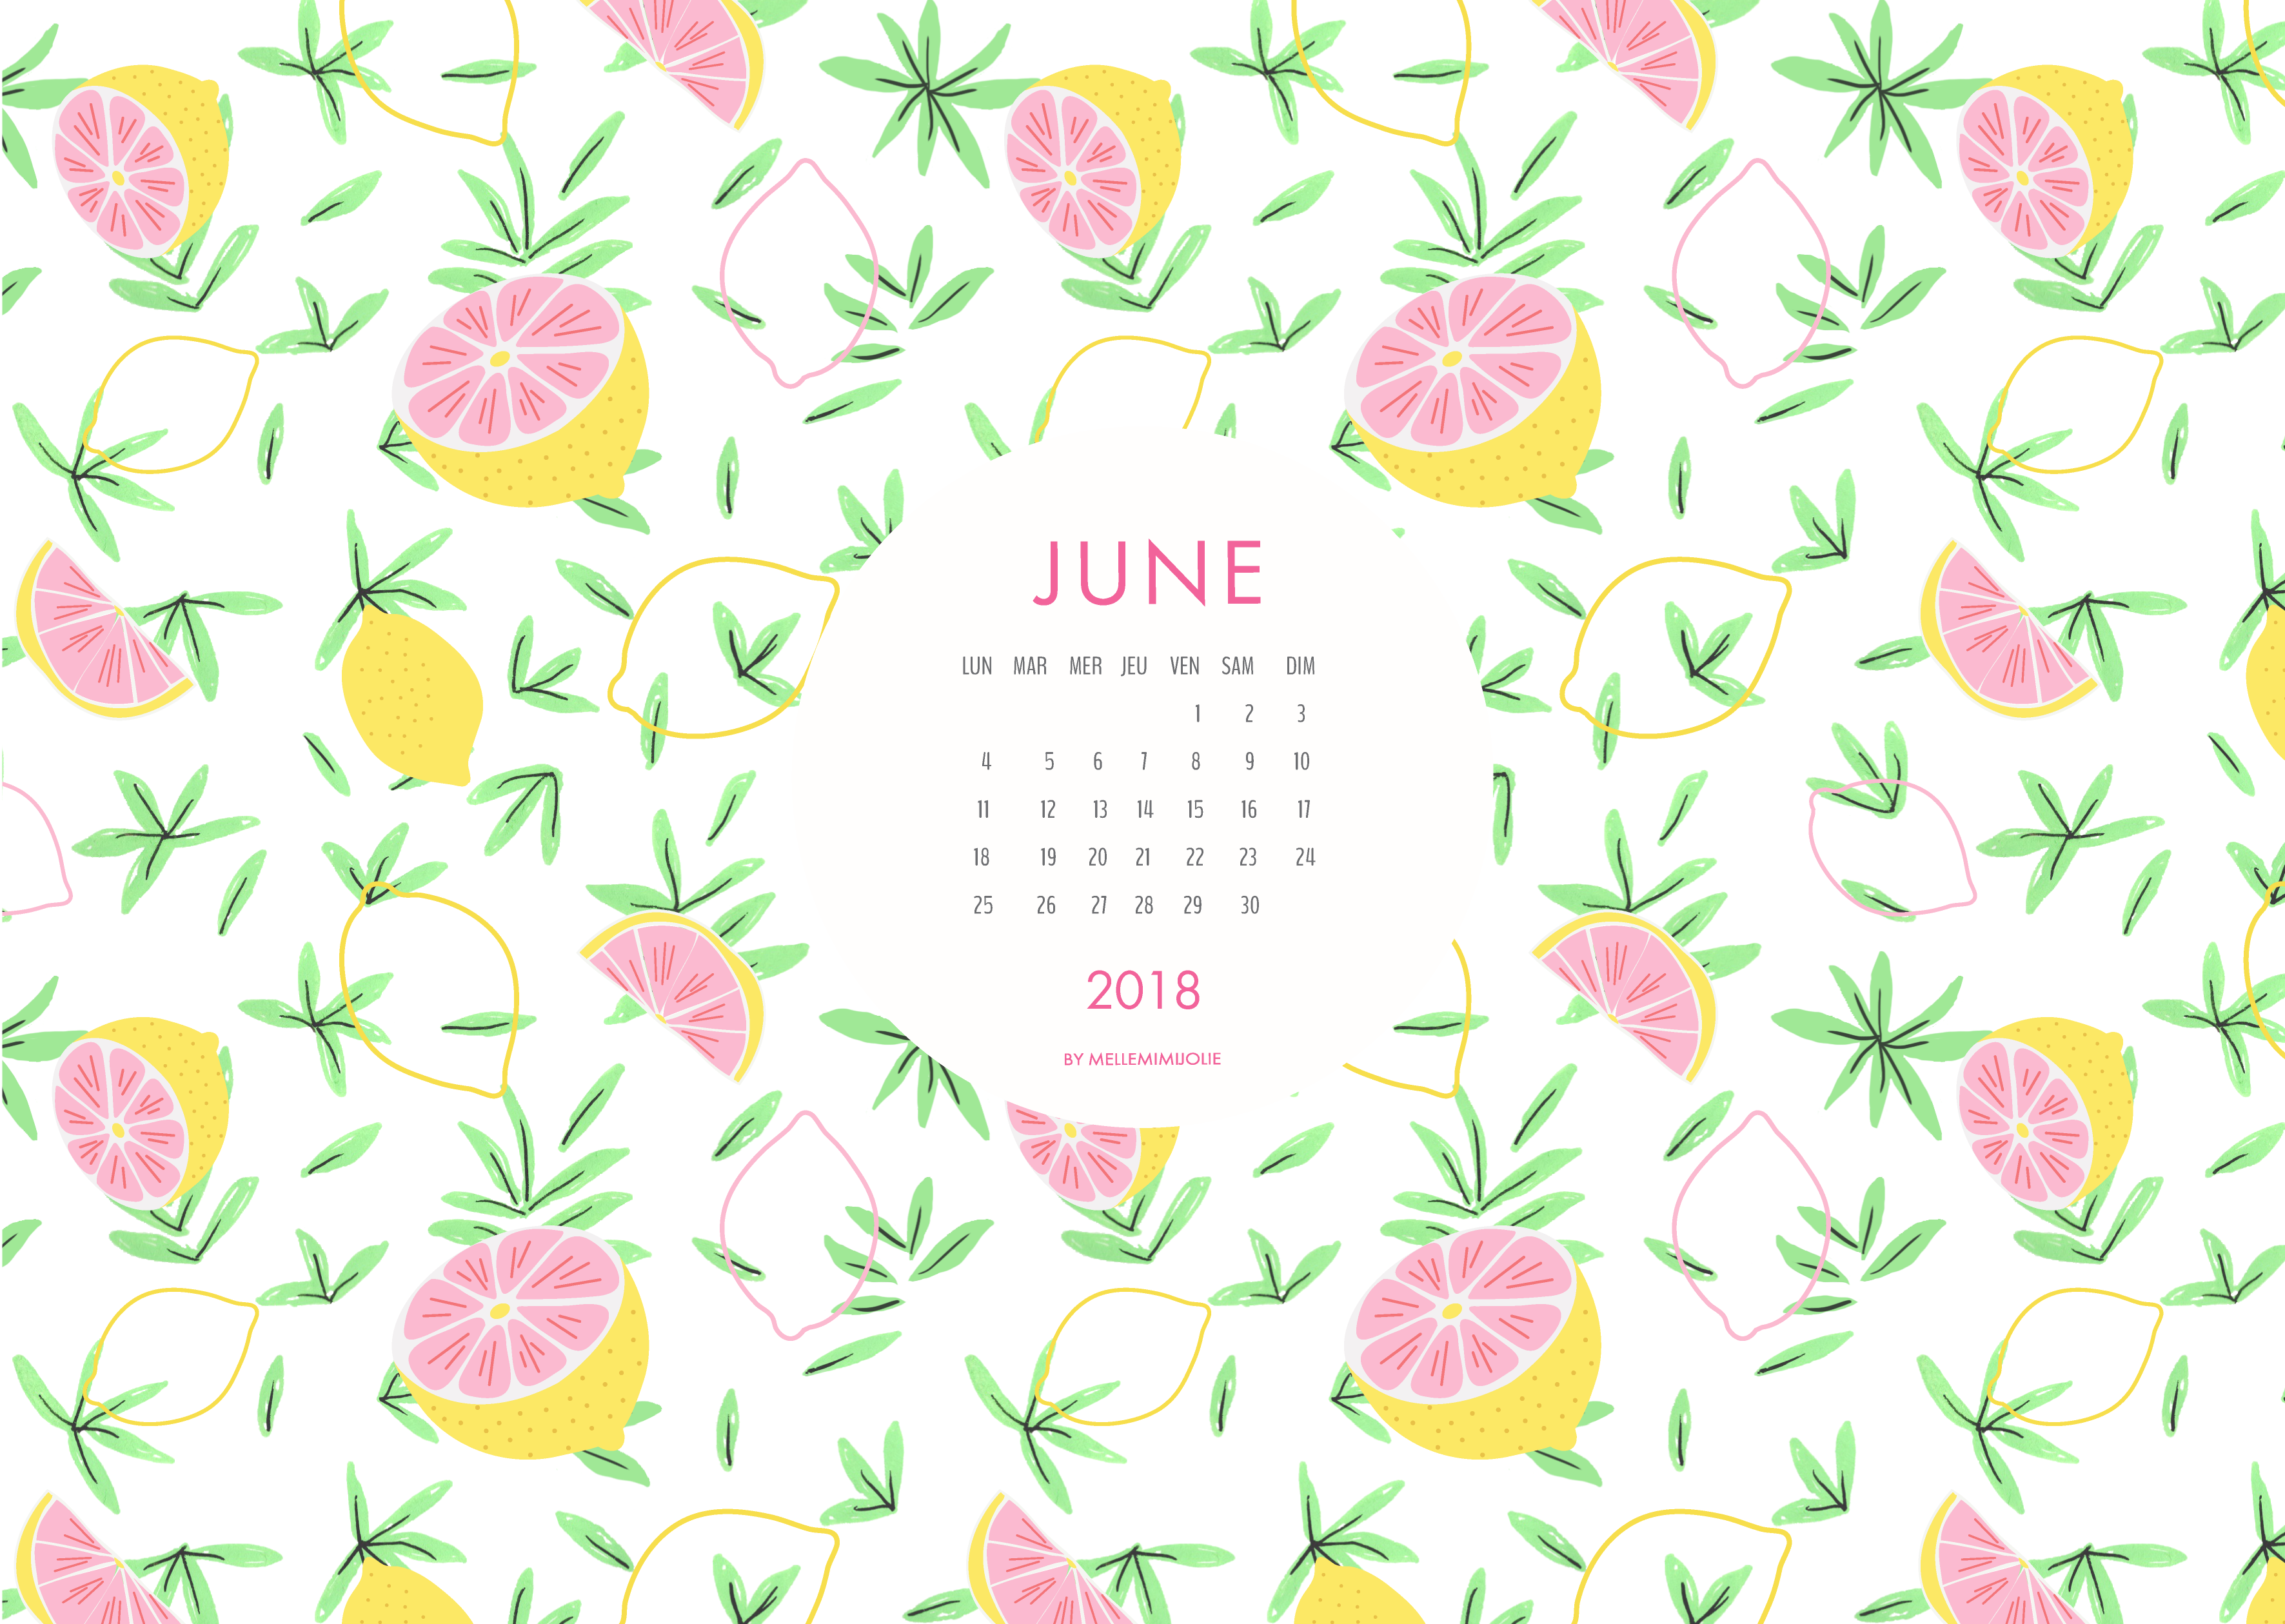 juin-mellemimijolie-citrons